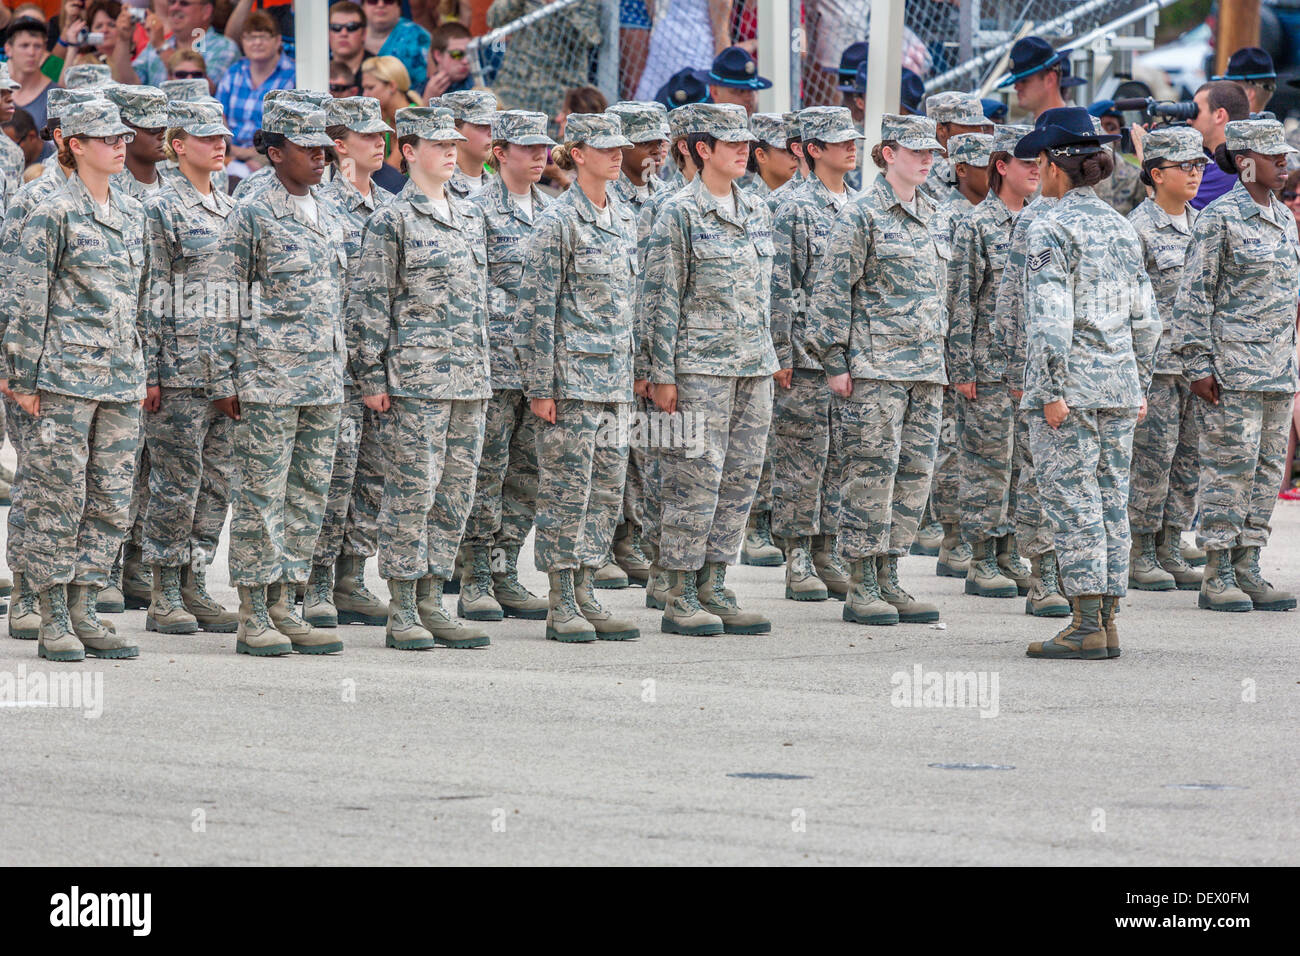 Vuelo de aviadores femenino en la atención en la formación de la Fuerza Aérea de los Estados Unidos durante la formación básica las ceremonias de graduación Foto de stock